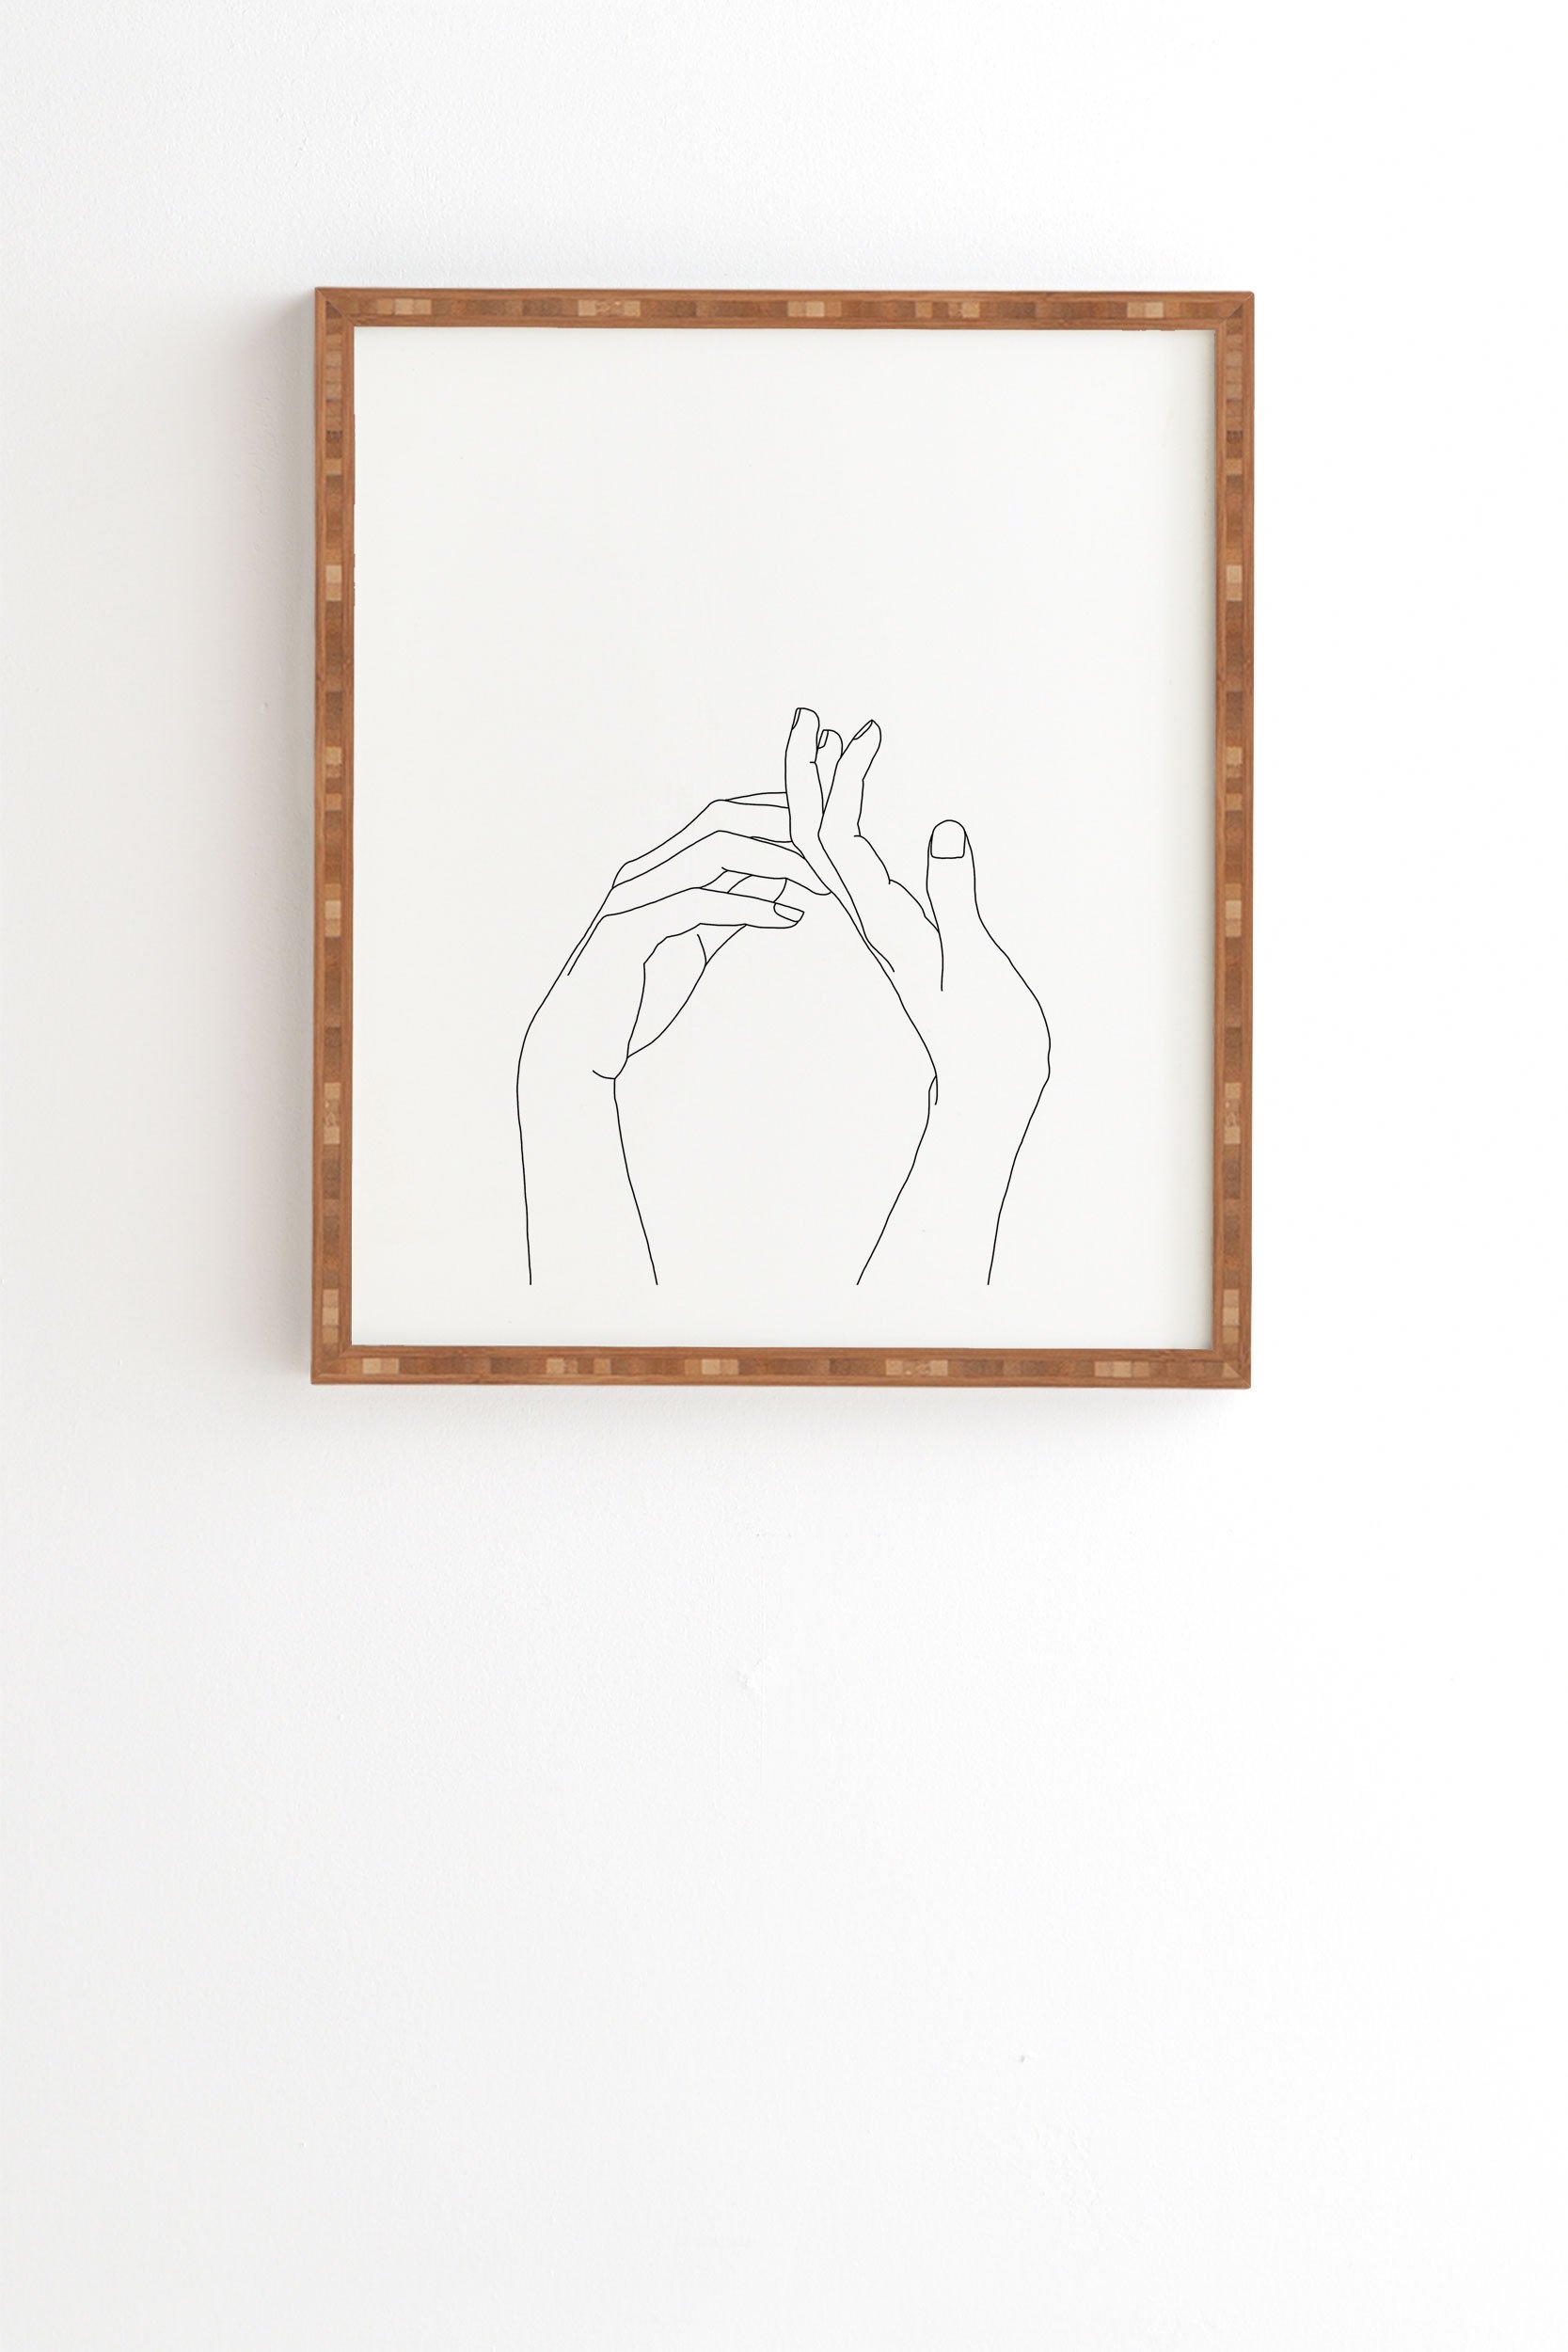 Framed Wall Art Black Frame, Hands Line Drawing Abi, 8" x 9.5" - Image 0